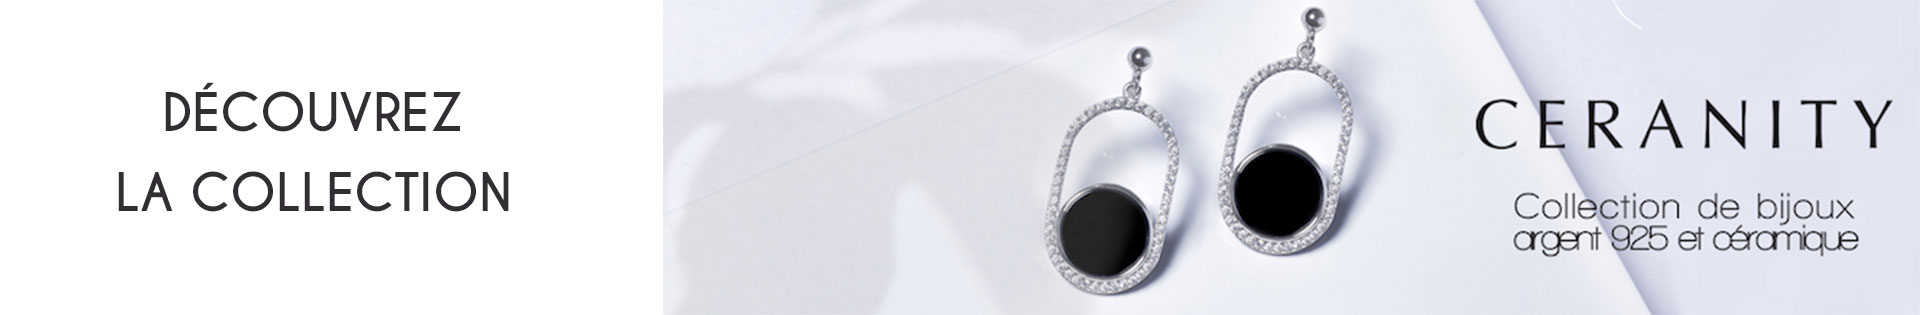 Marques de bijoux - Ceranity Silver - Collier